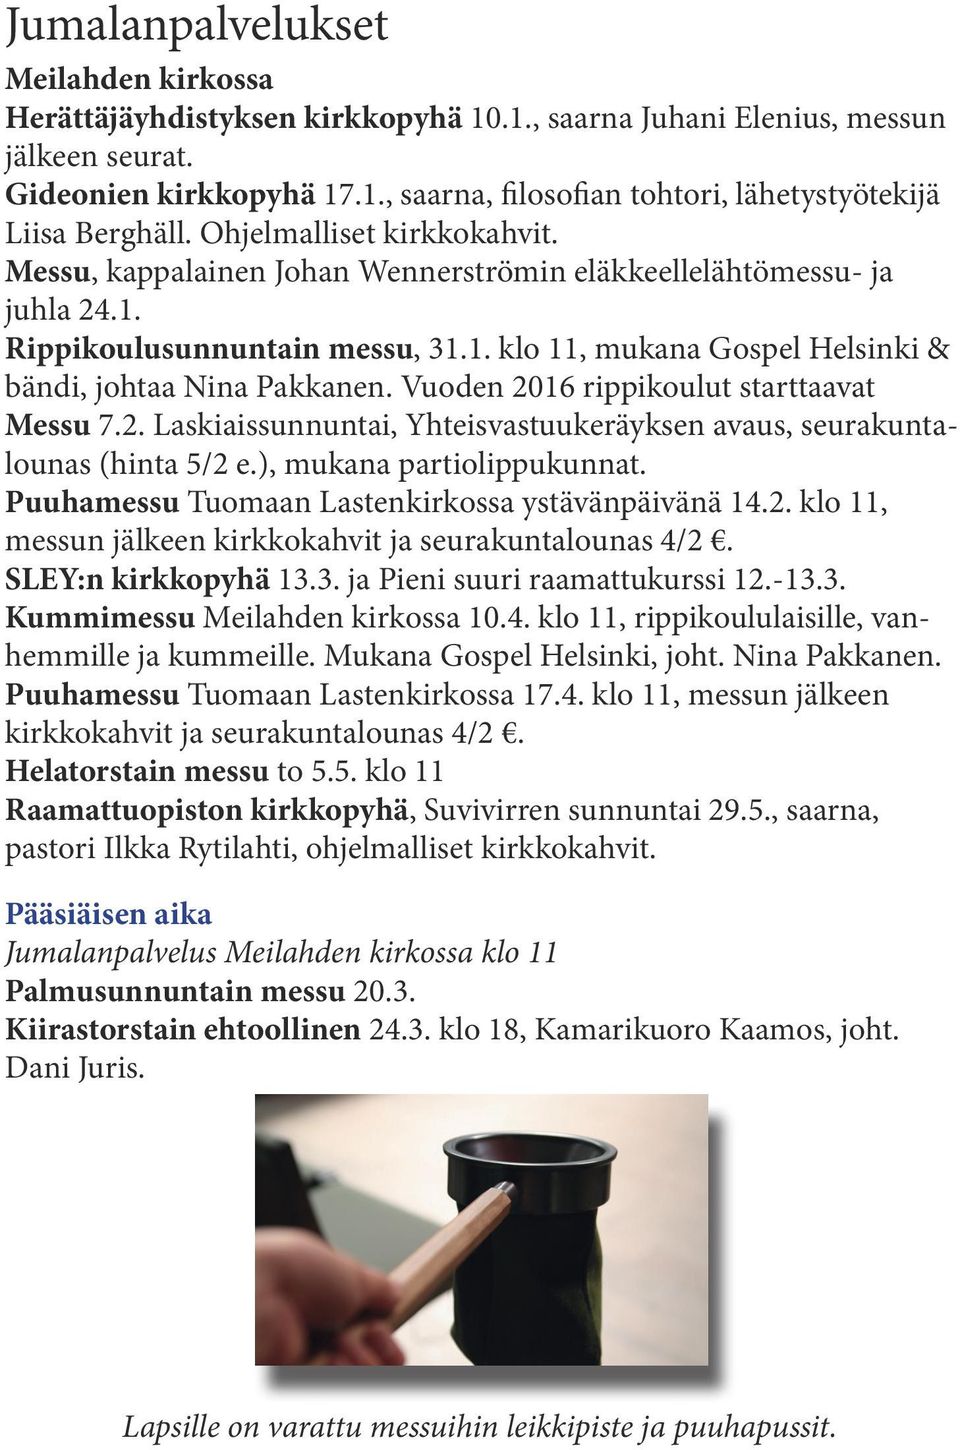 Vuoden 2016 rippikoulut starttaavat Messu 7.2. Laskiaissunnuntai, Yhteisvastuukeräyksen avaus, seurakuntalounas (hinta 5/2 e.), mukana partiolippukunnat.